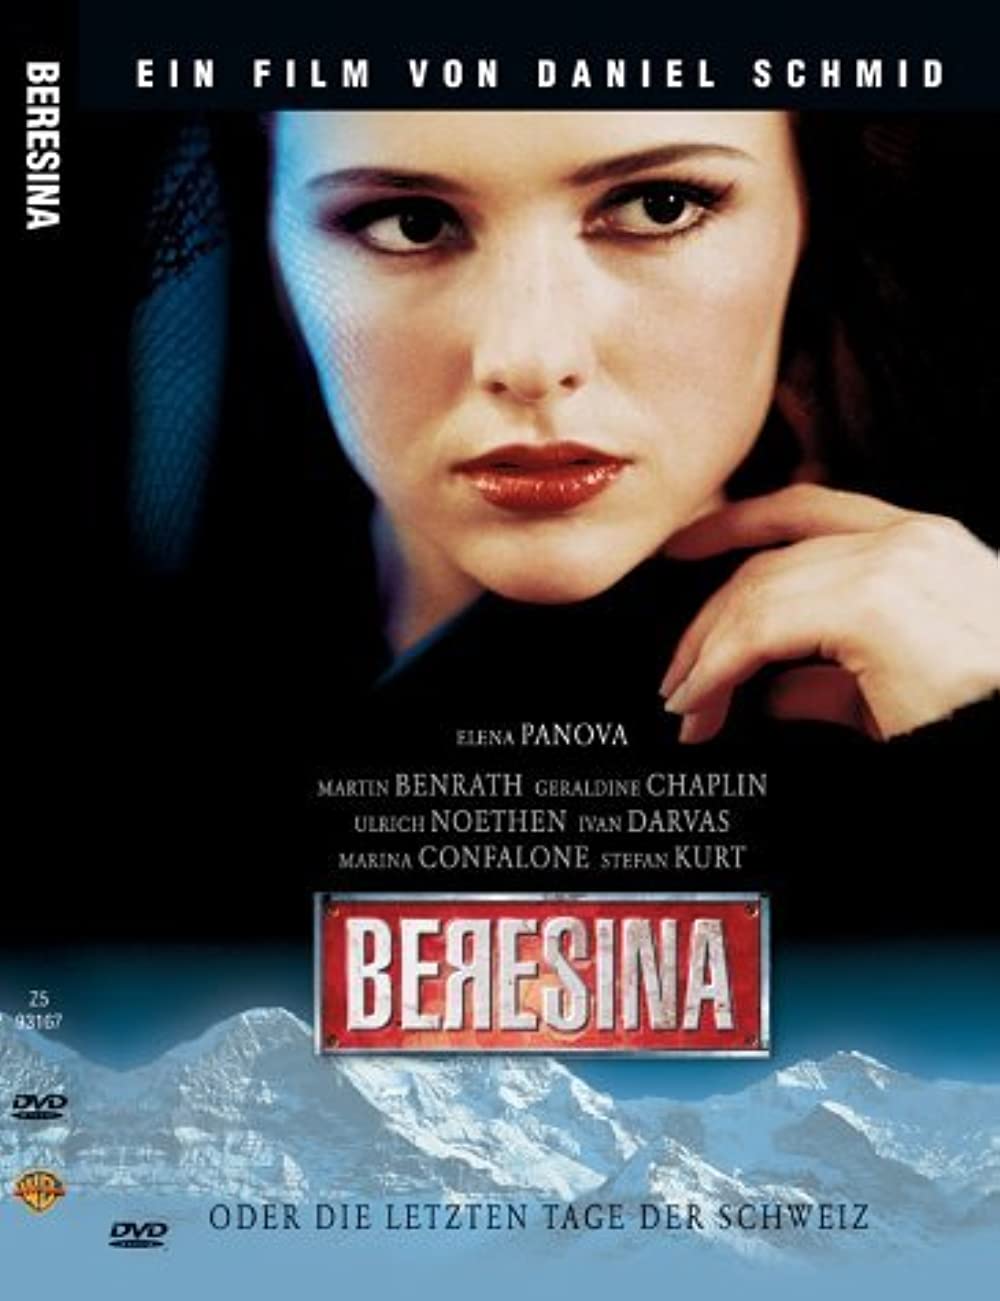 Filmbeschreibung zu Beresina - oder die letzten Tage der Schweiz